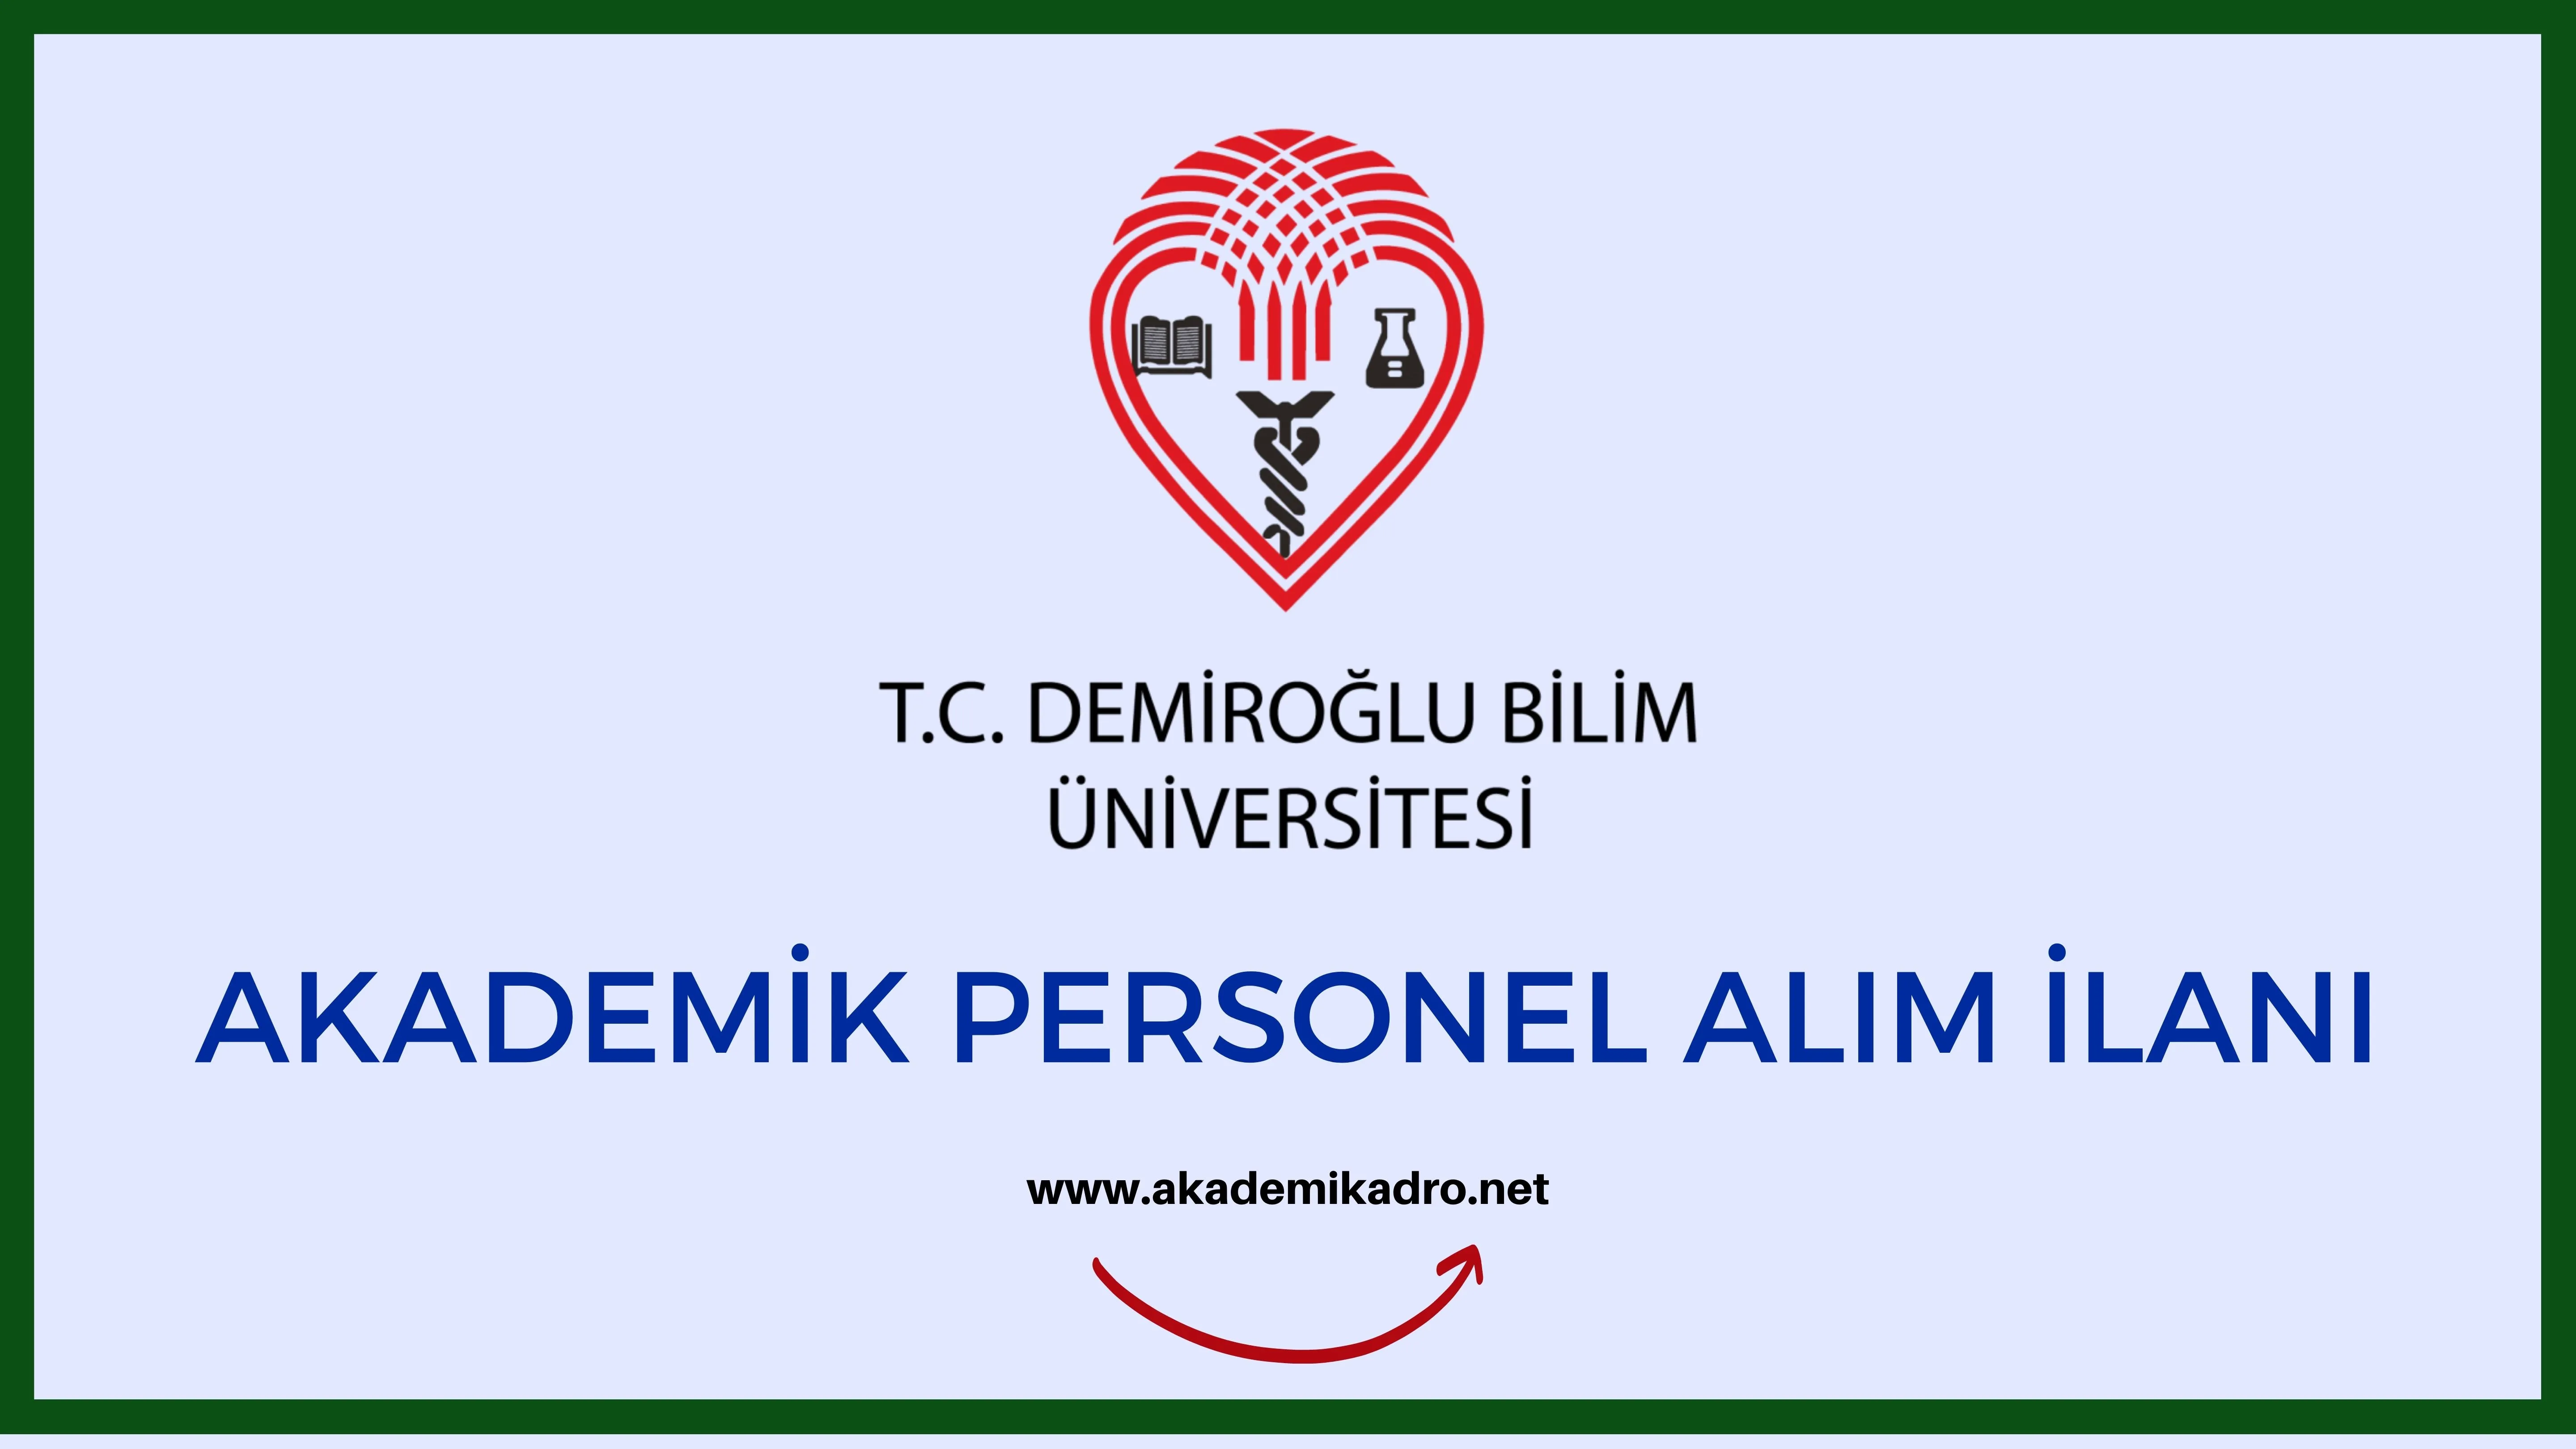 Demiroğlu Bilim Üniversitesi 2 Öğretim üyesi alacak. Son başvuru tarihi 28 Ekim 2022.